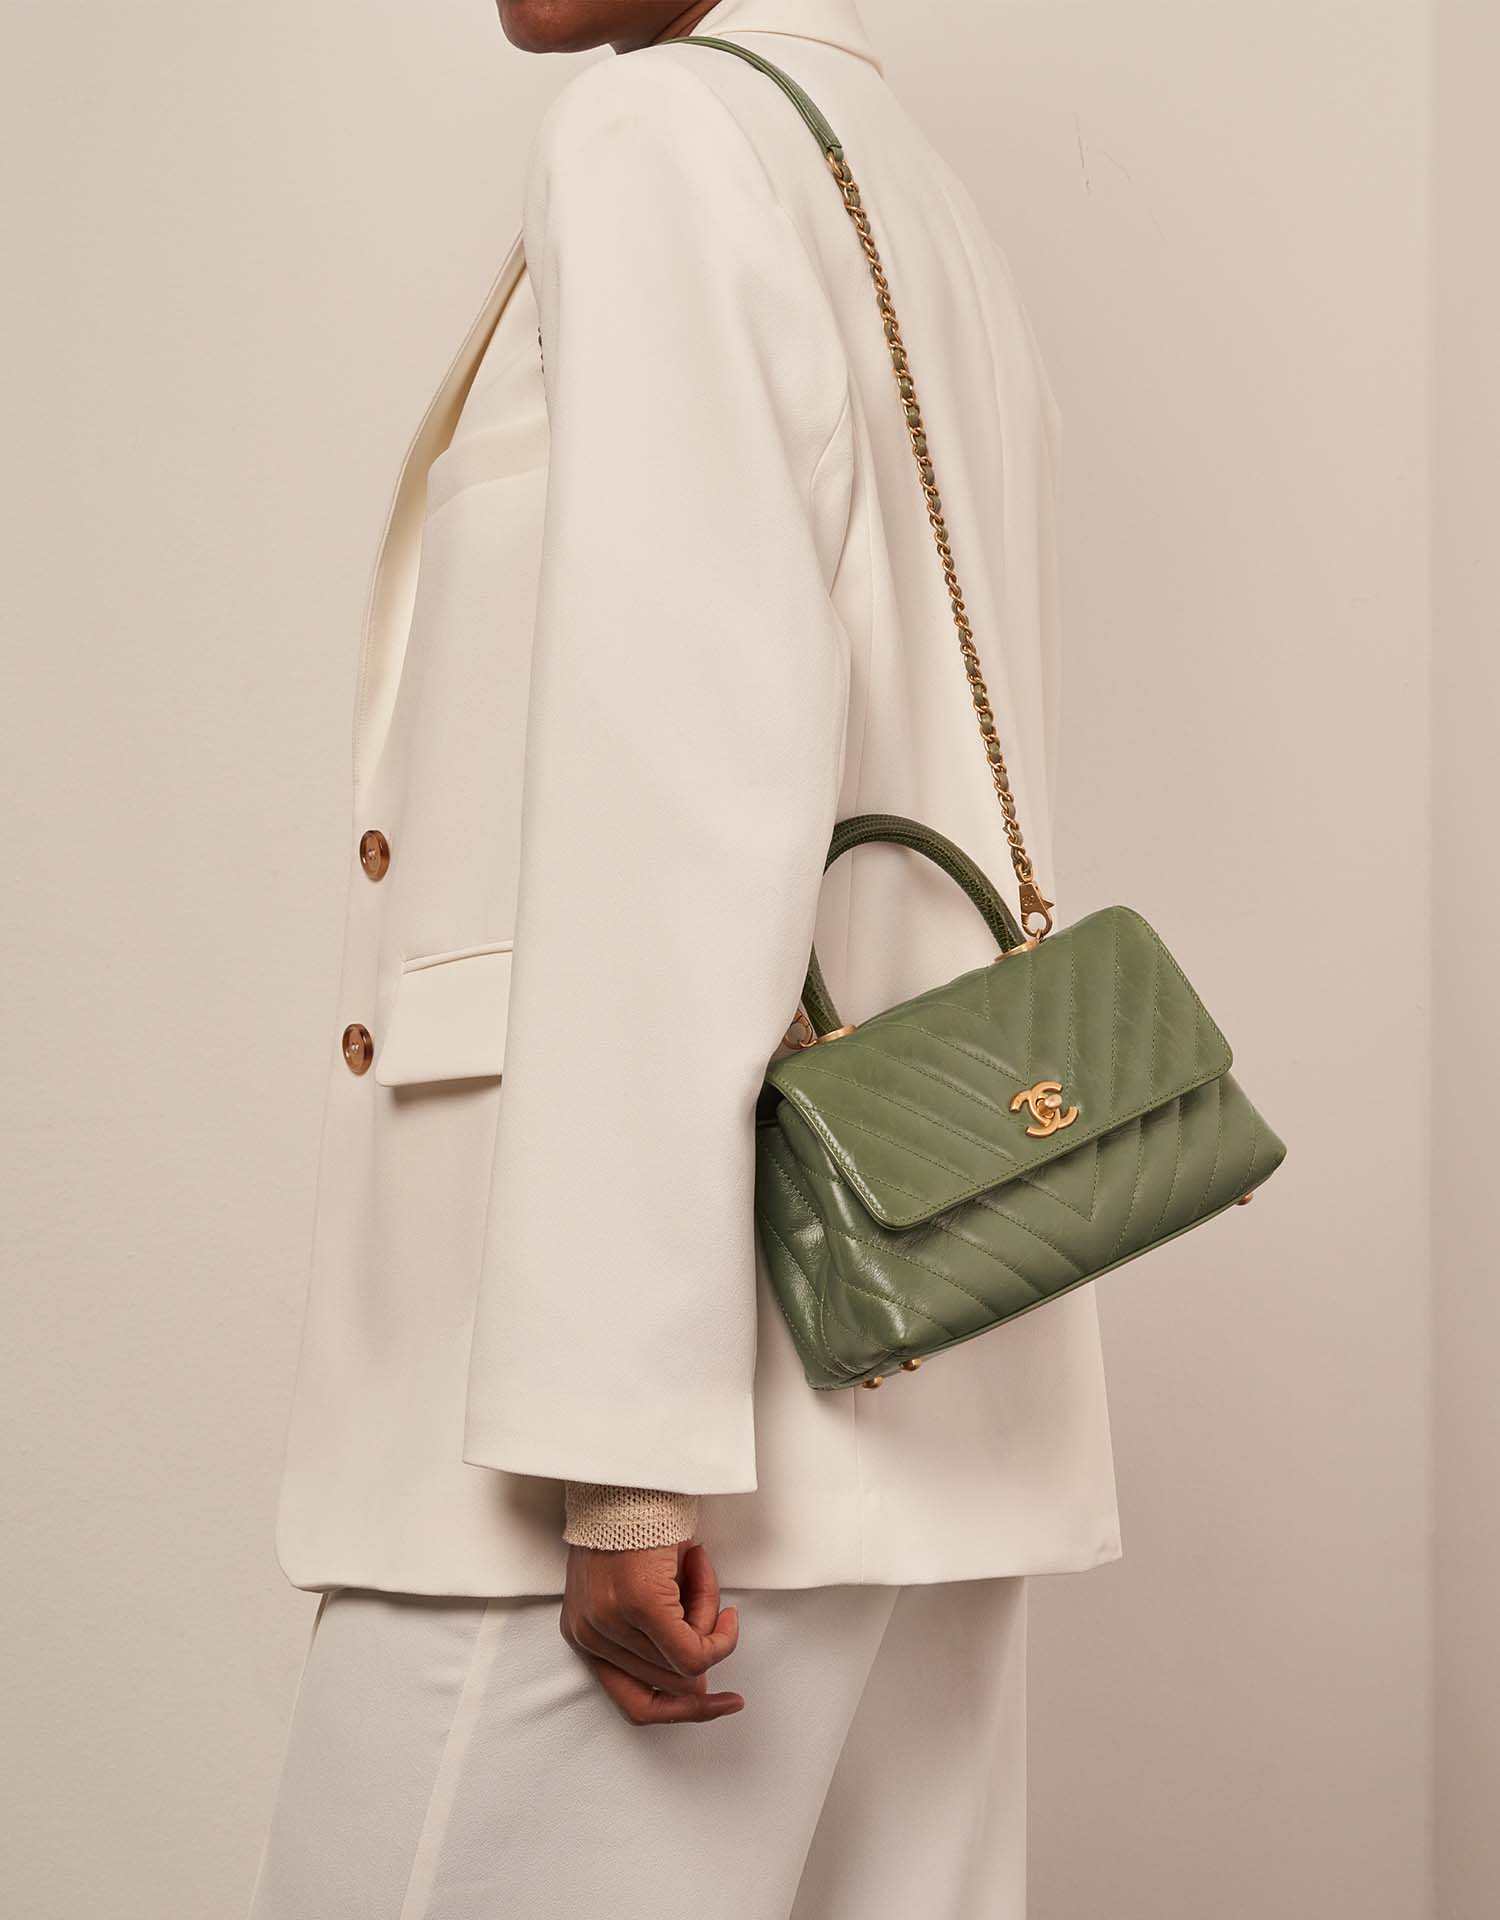 Chanel TimelessHandle Small Green Sizes Worn | Verkaufen Sie Ihre Designer-Tasche auf Saclab.com